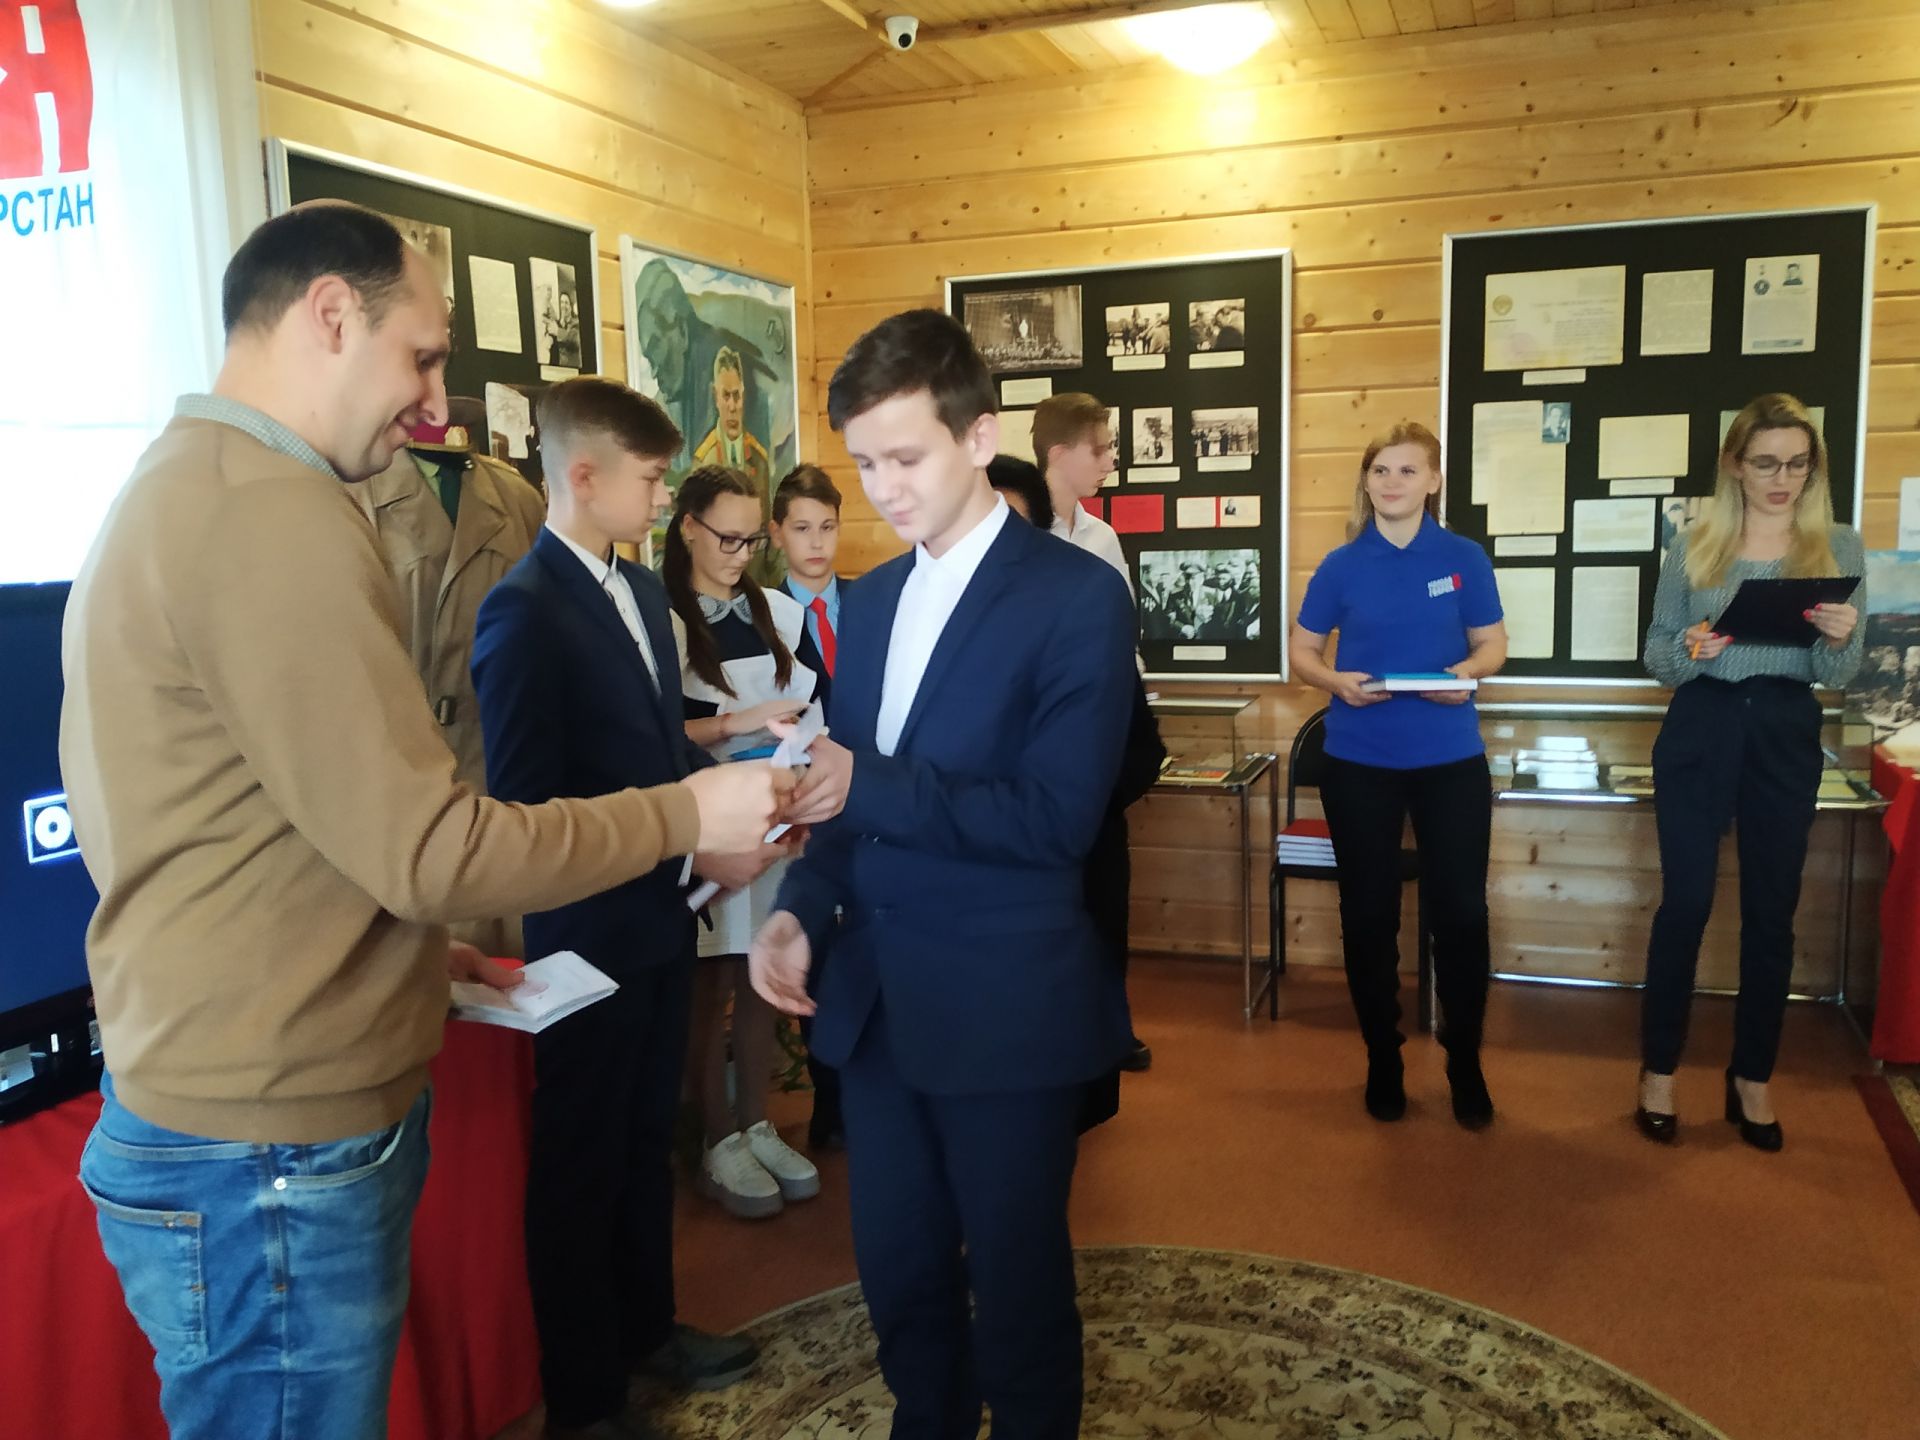 В музее Петра Гаврилова вручили паспорта юным гражданам